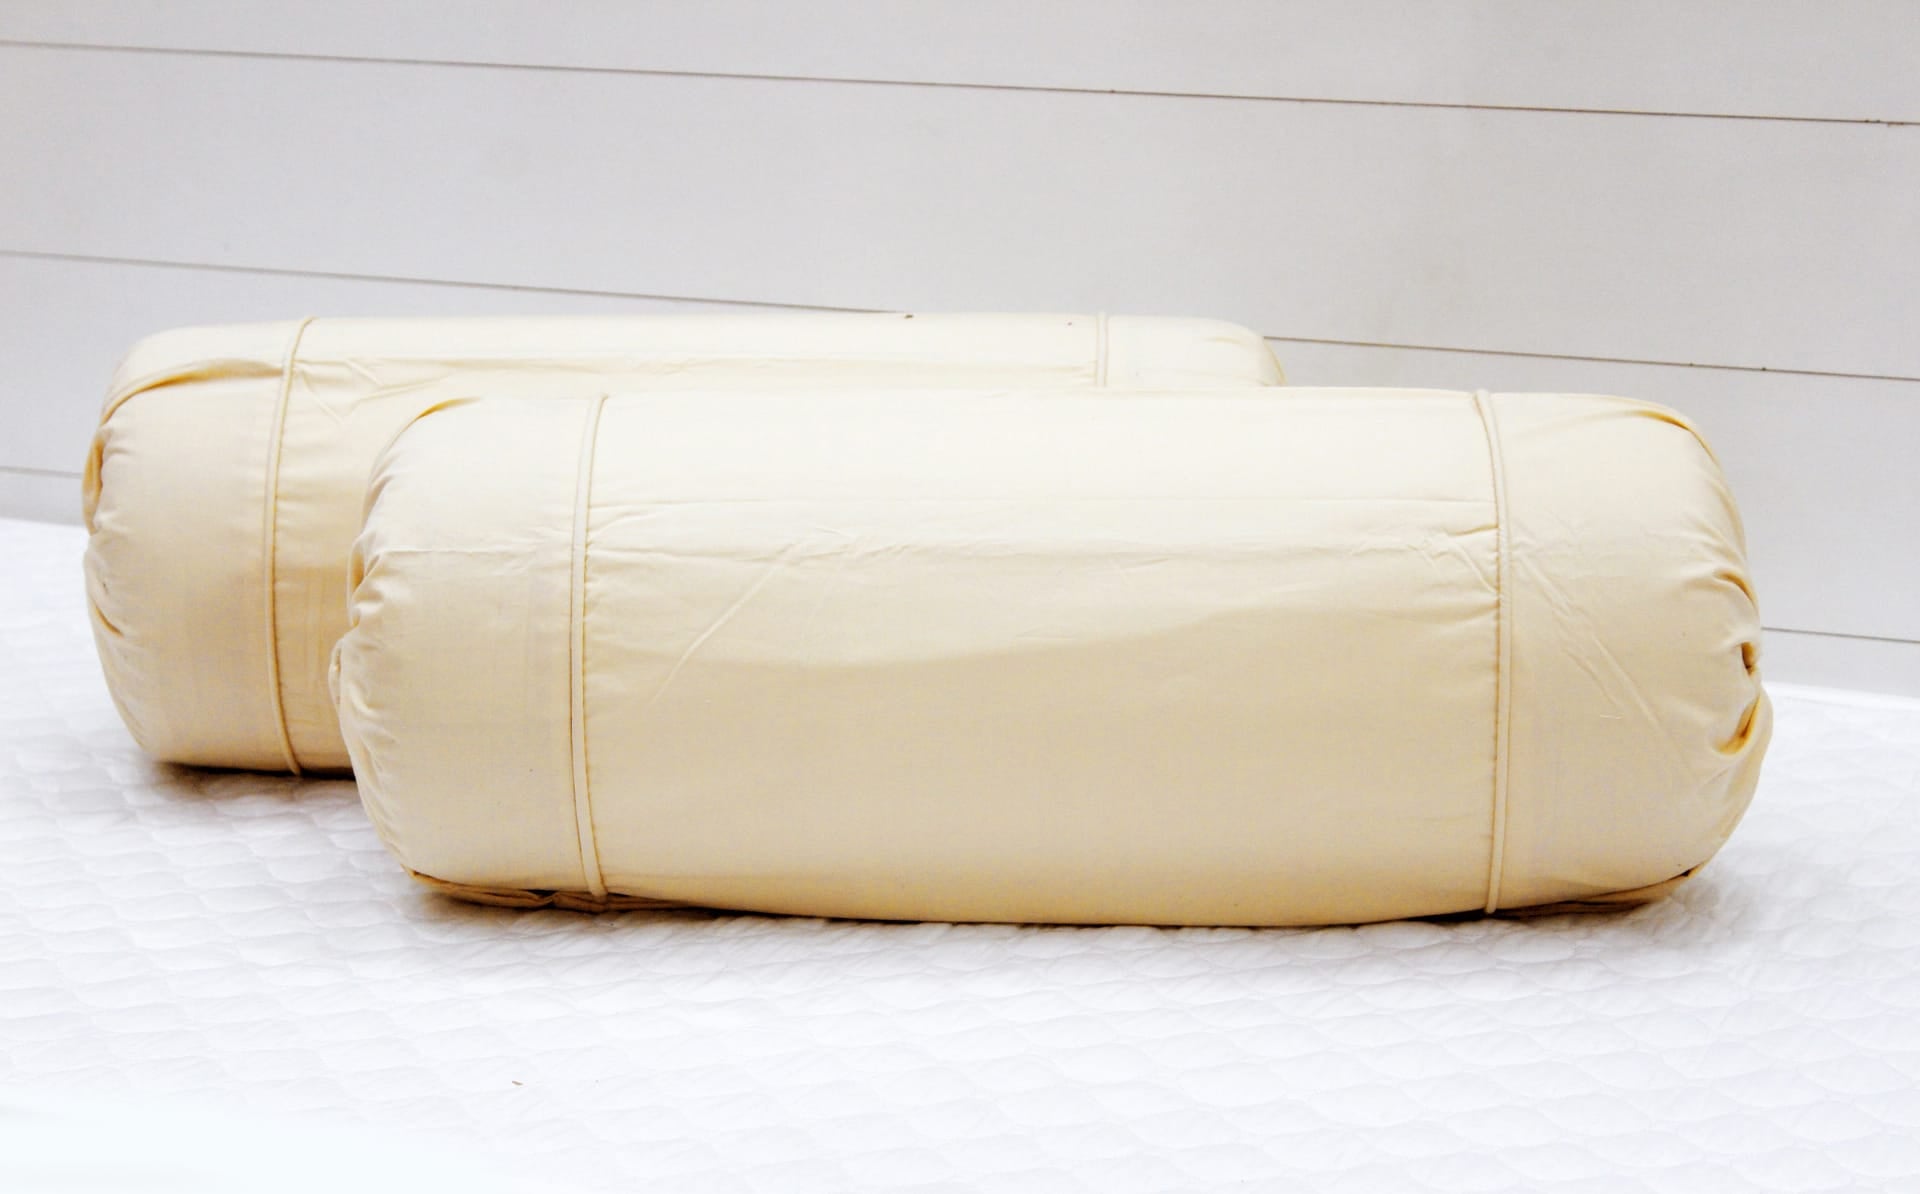 Comfortable Plain Cotton Bolster Cover Set 2pcs in Beige online 